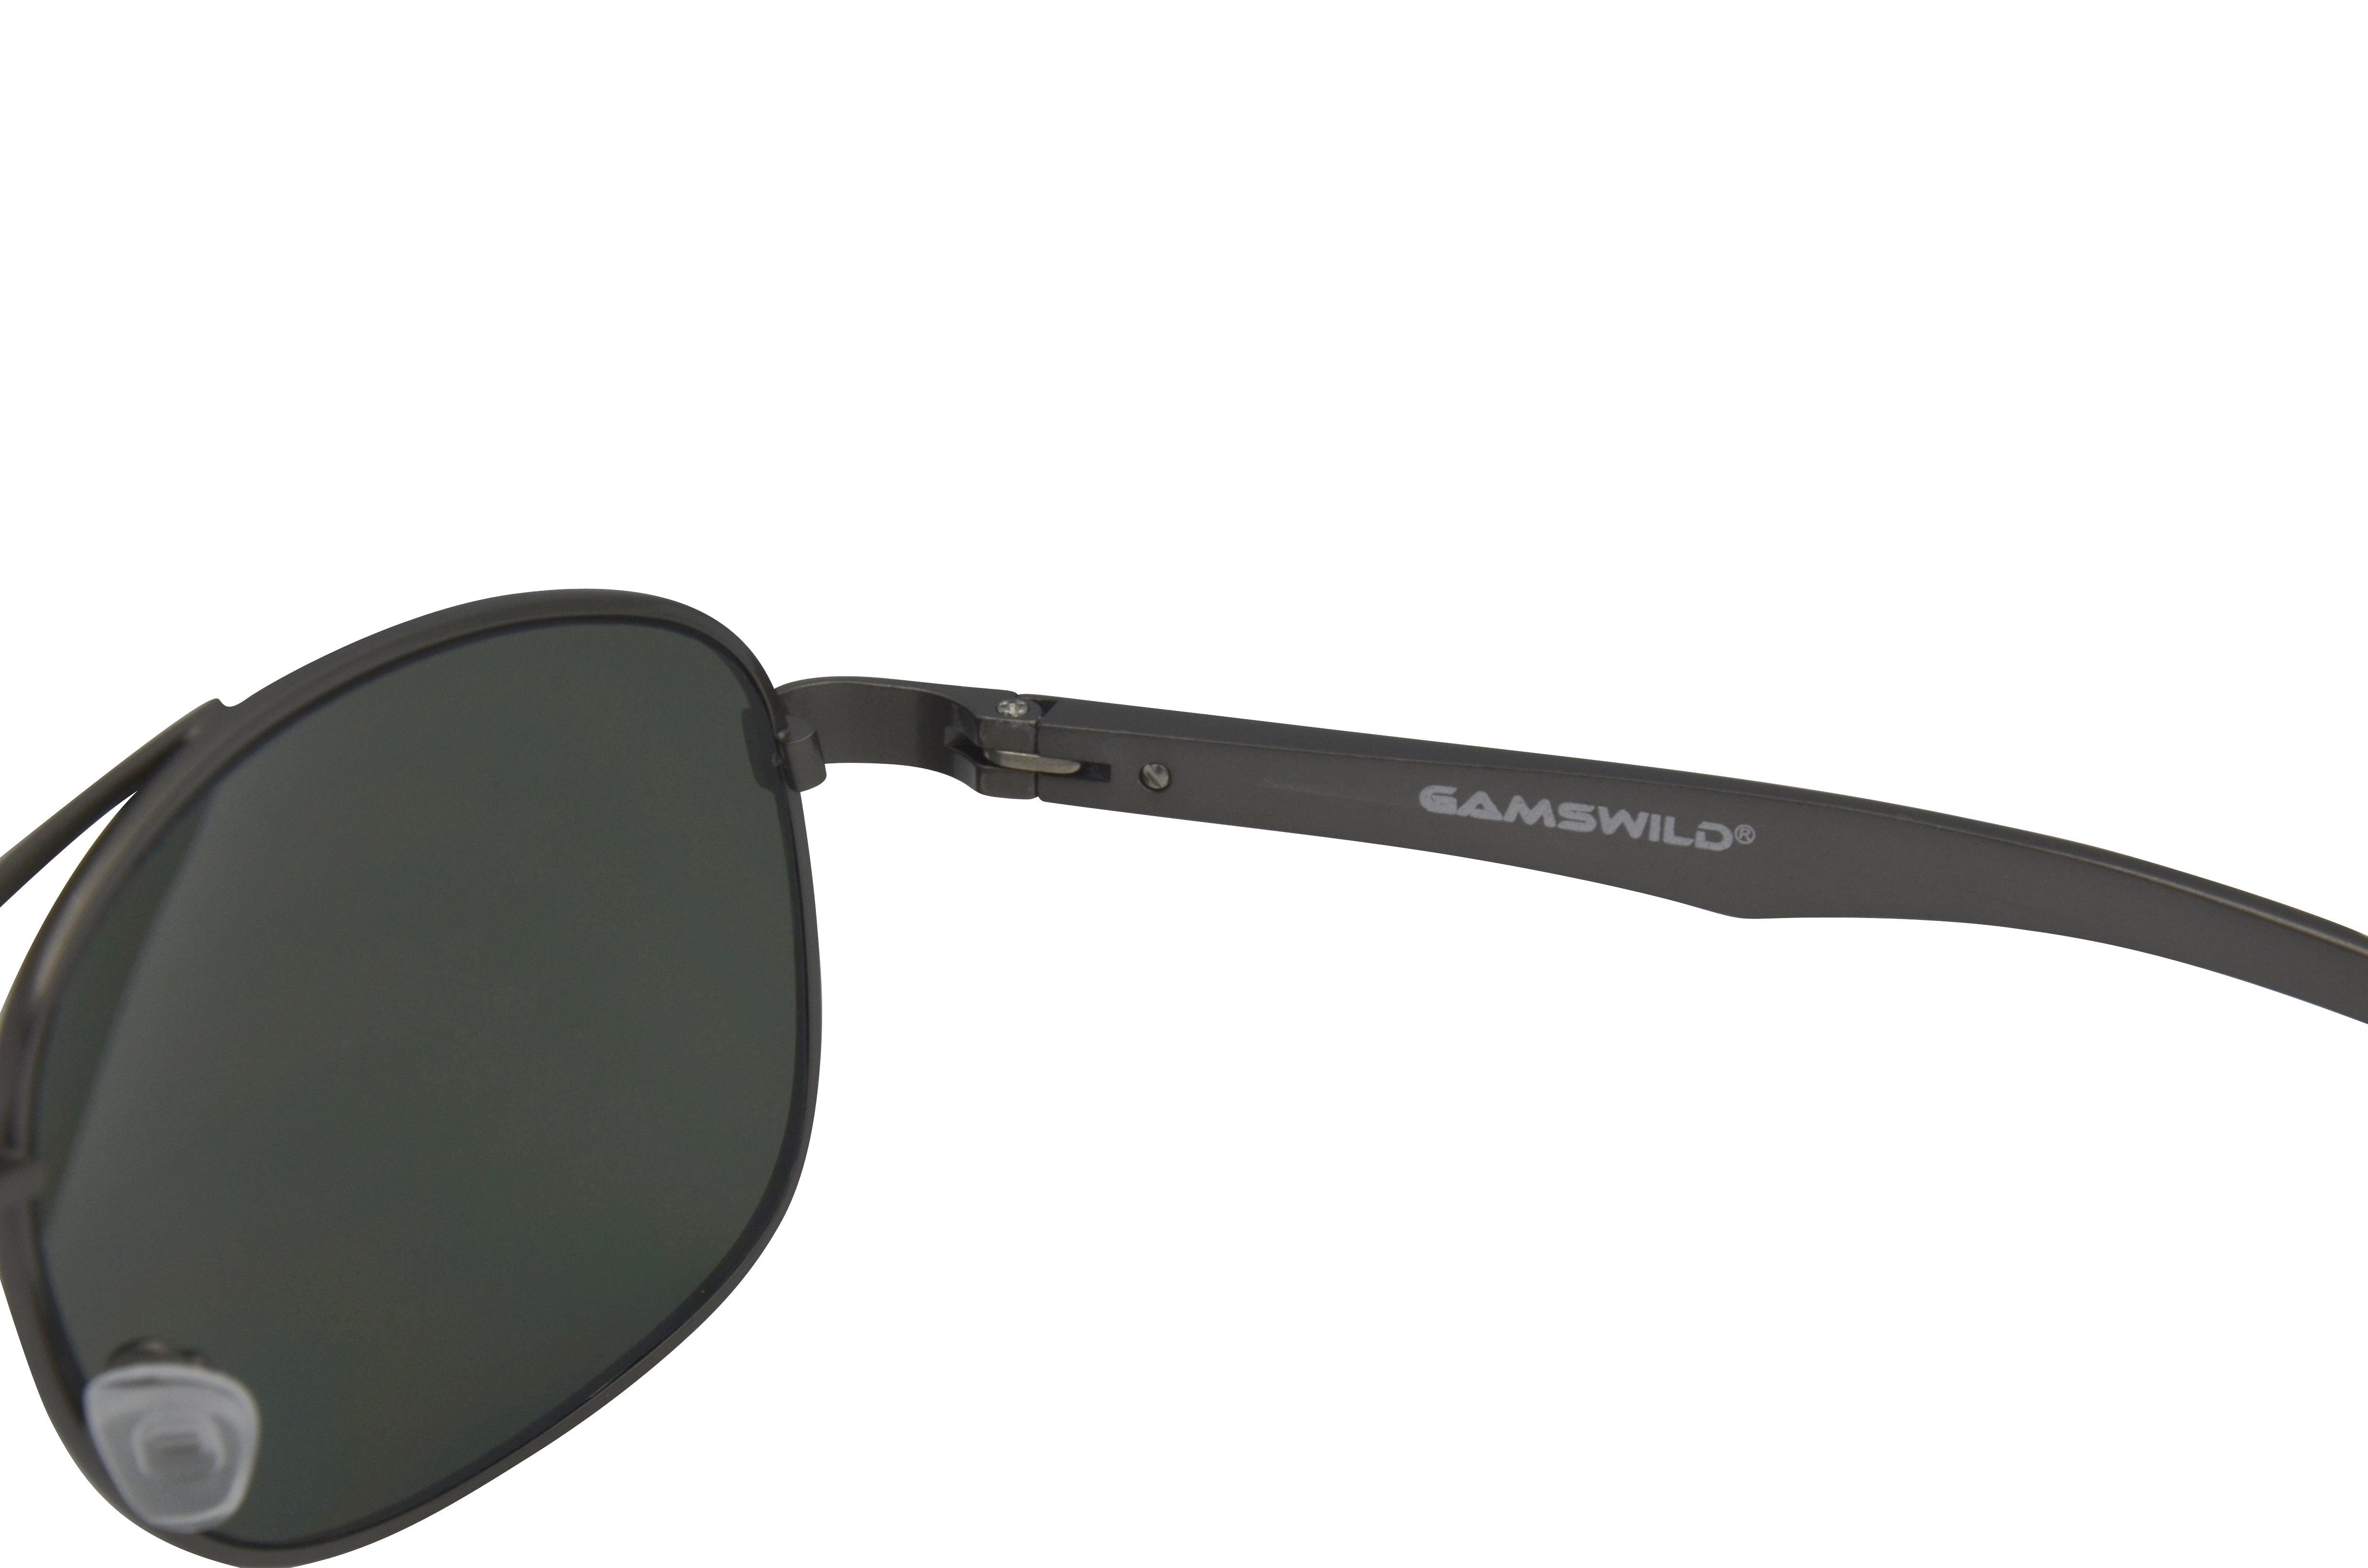 GAMSSTYLE Pilotenbrille silber-grau, Sonnenbrille Gamswild Mode grau-grün Damen WM1322 Unisex, Herren blau-gold, Brille